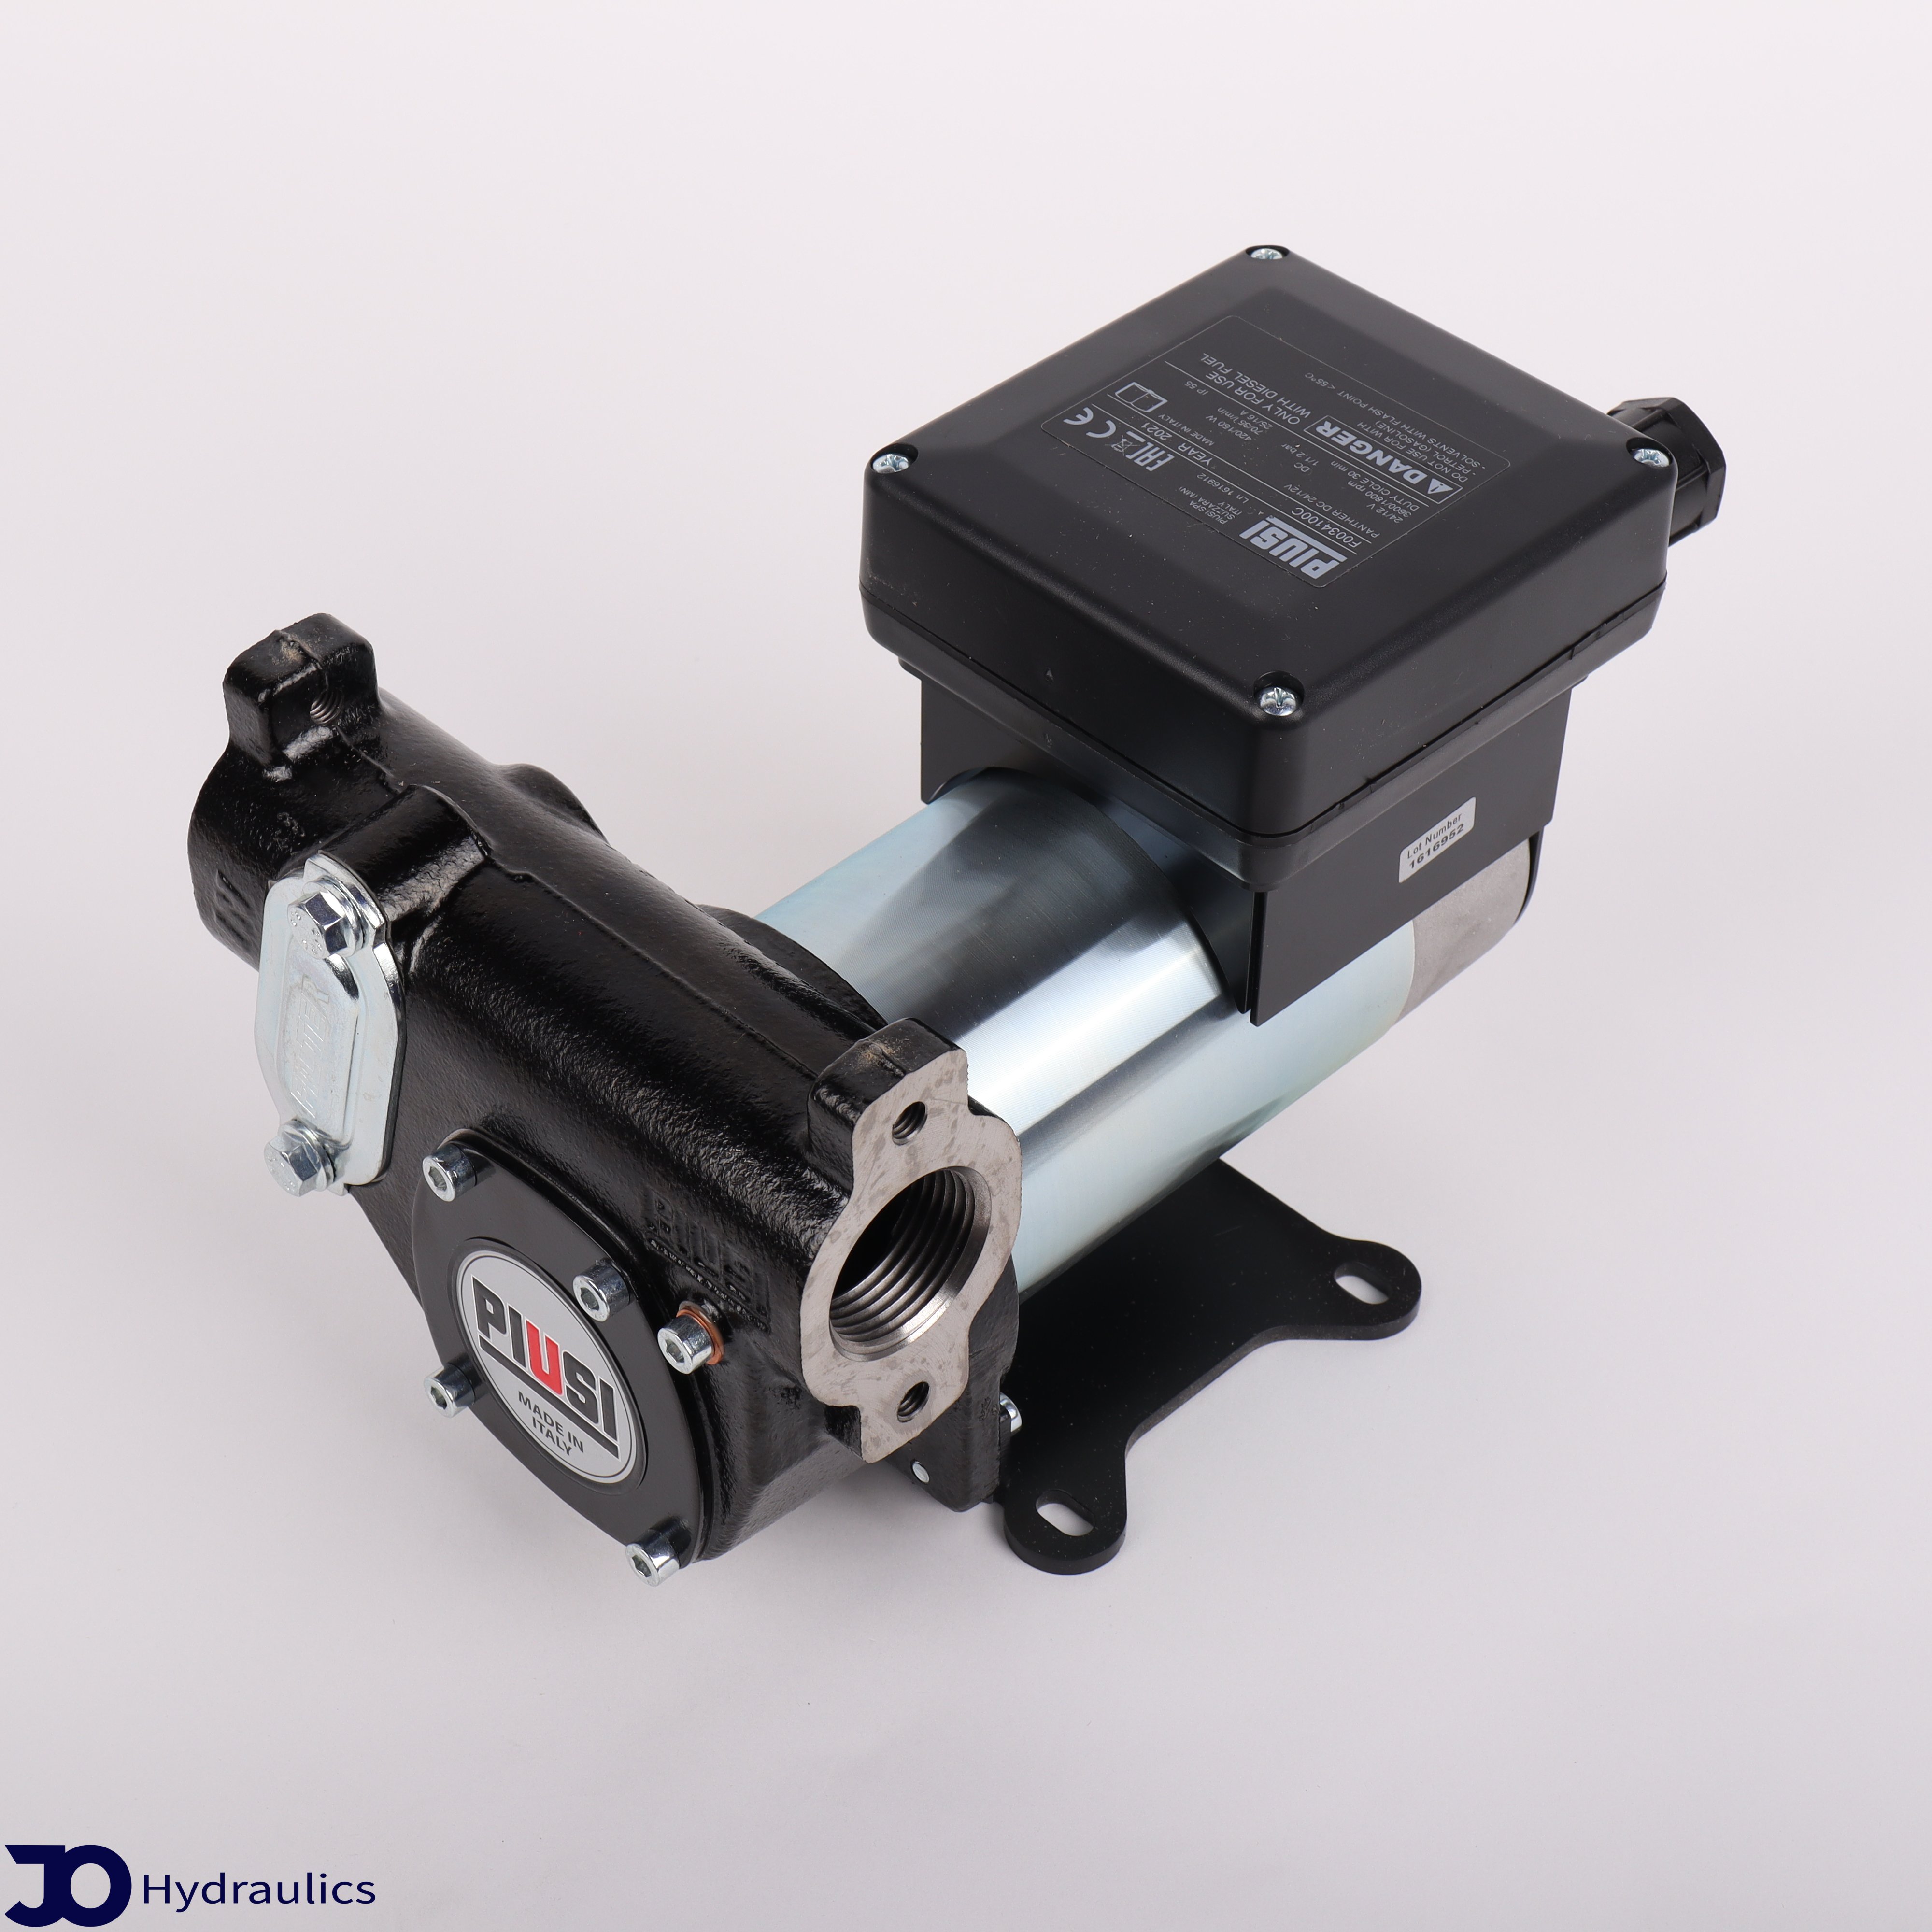 sandaler ret analogi Diesel Pumpe Panther DC24/12V 70L/min - Eldrevne pumper - JO Hydraulics A/S